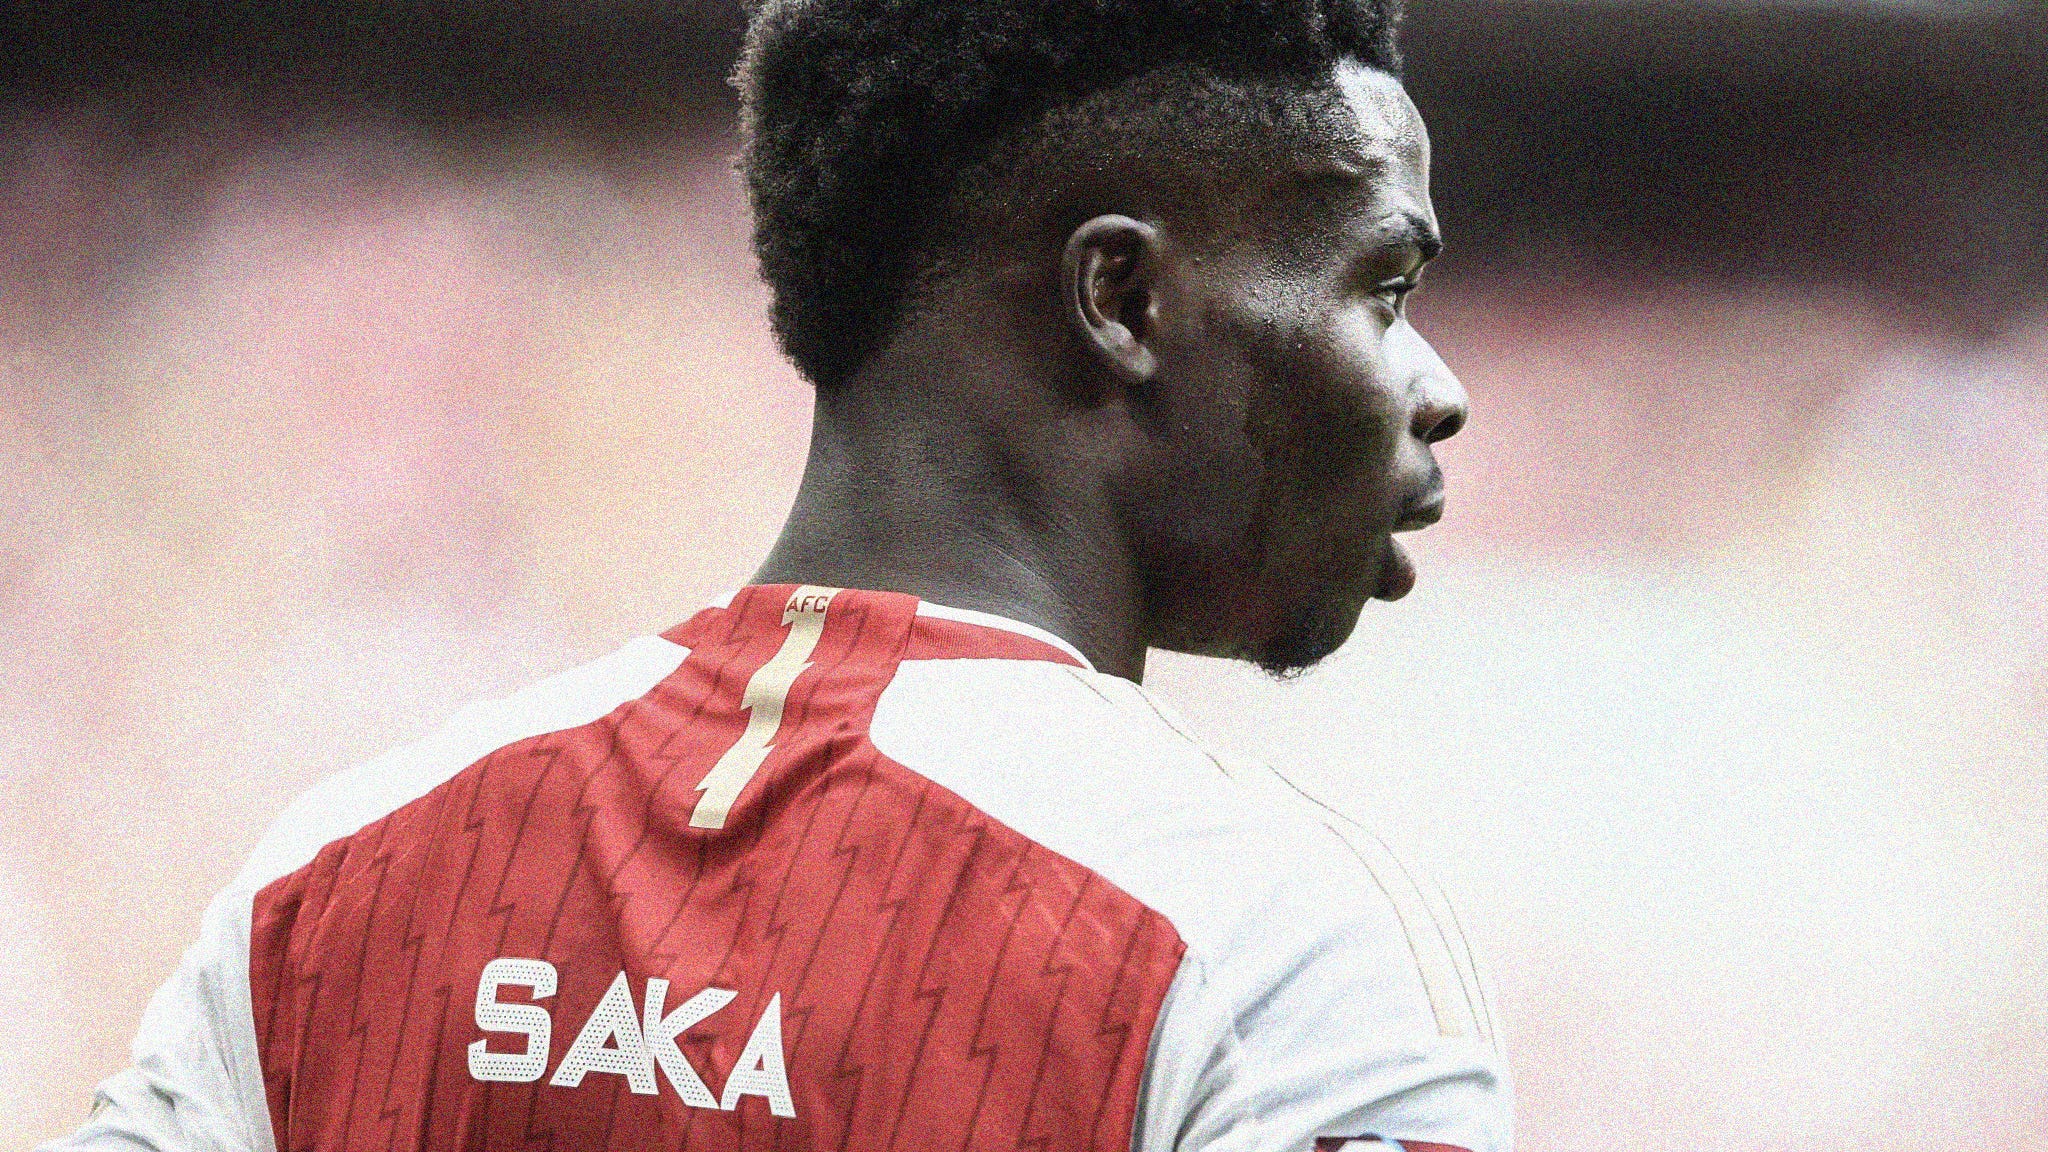 A close-up photo of Arsenal's Bukayo Saka from behind